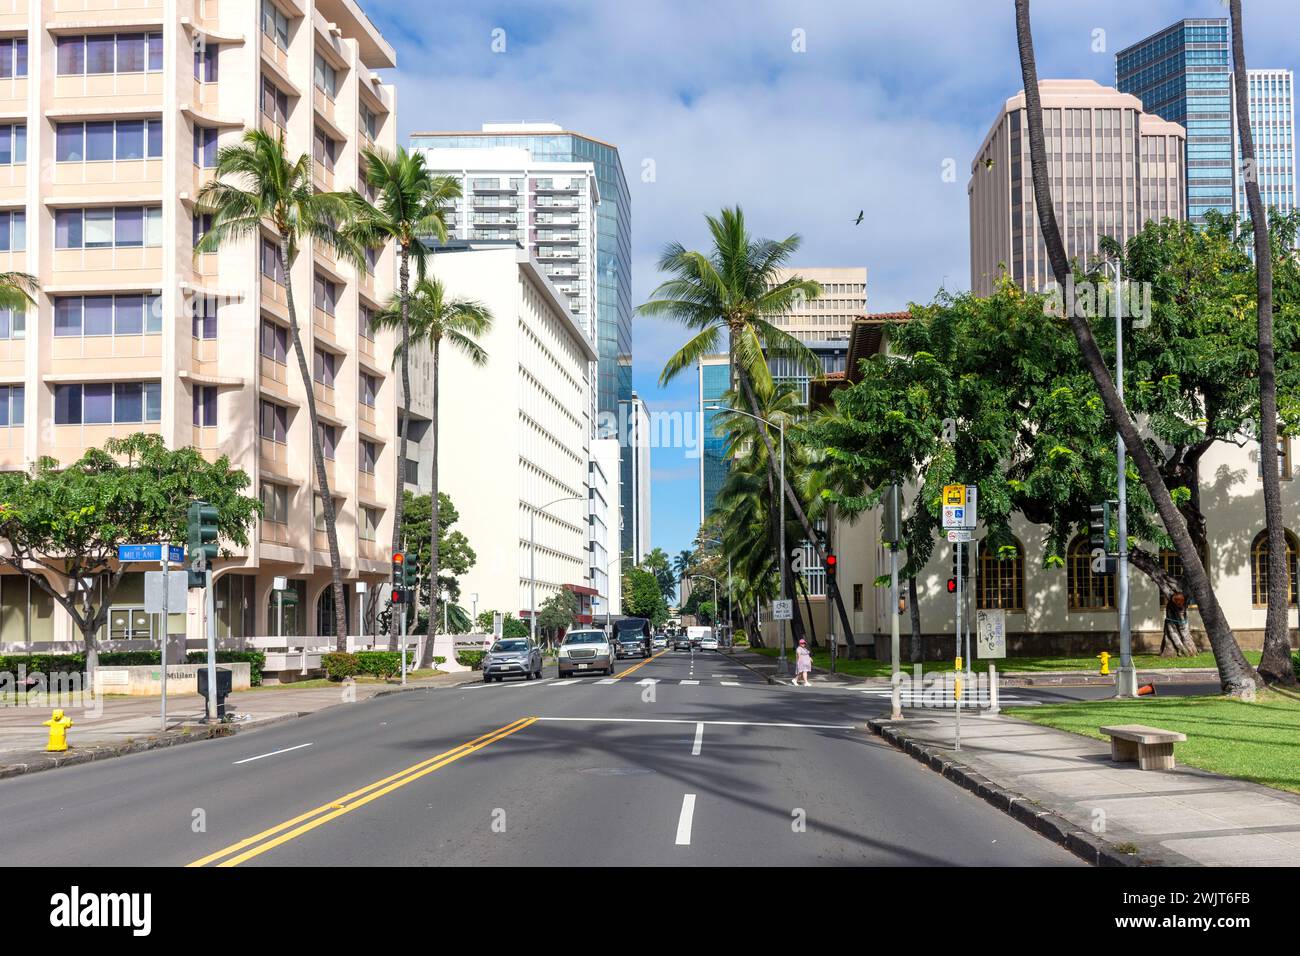 Queen Street, Waikiki, Honolulu, Oahu, Hawaii, United States of America Stock Photo